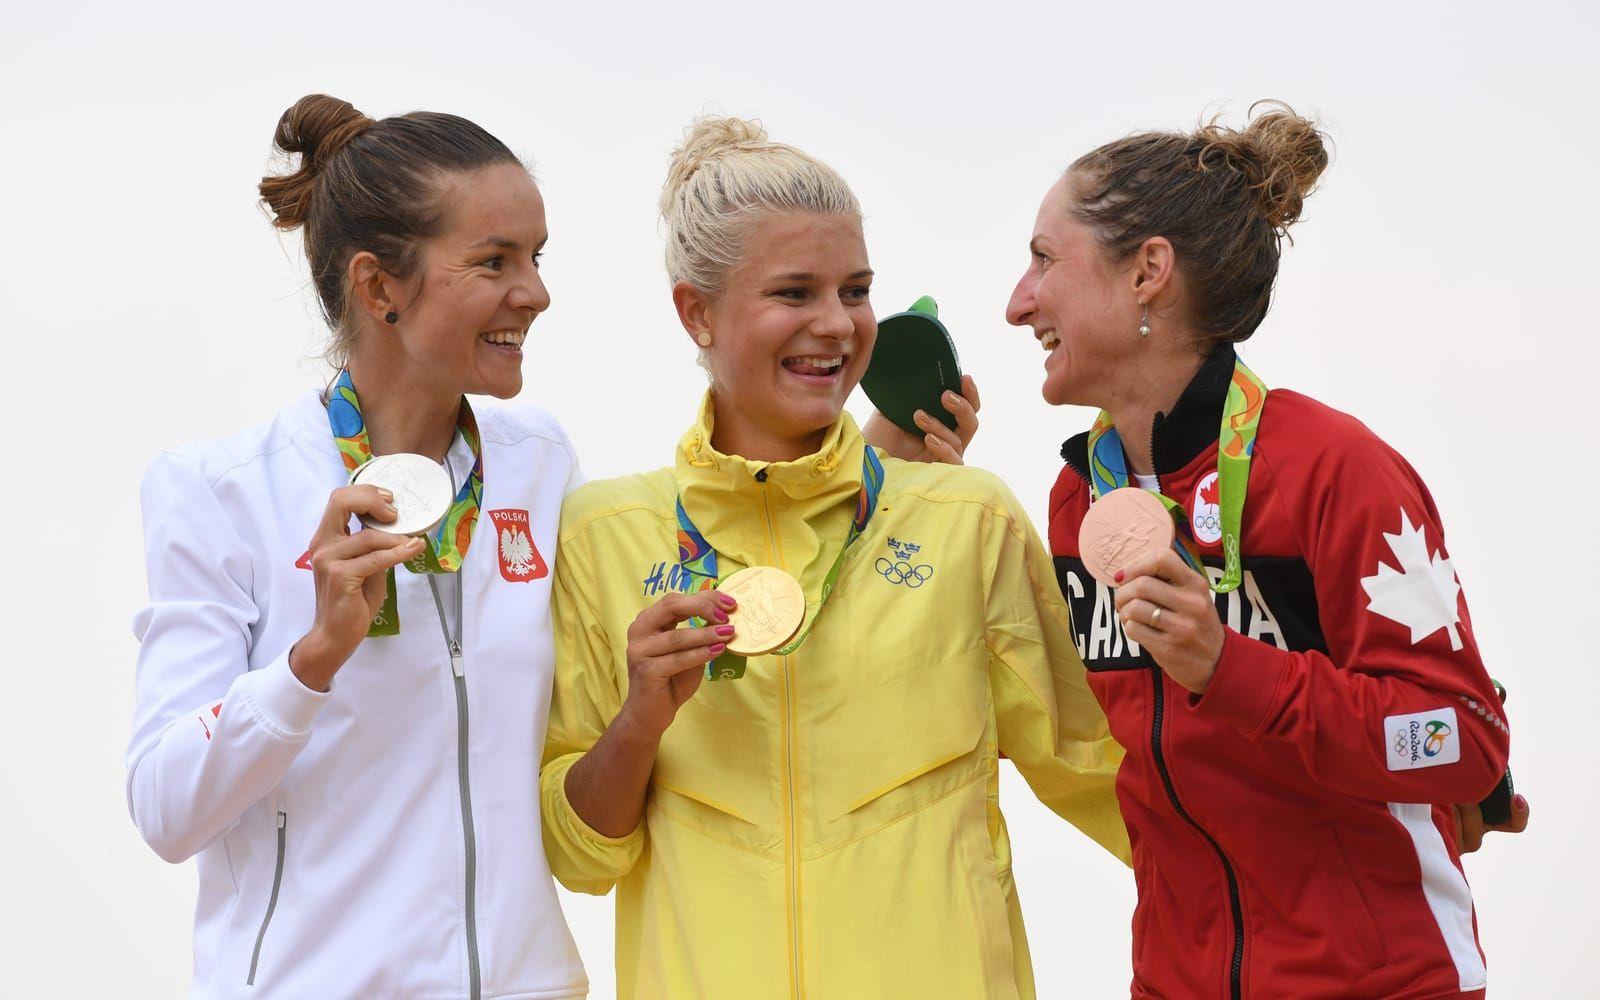 Rissveds blev hela Sveriges cykeldrottning under VM i Rio där hon vann guld. Bild: TT.